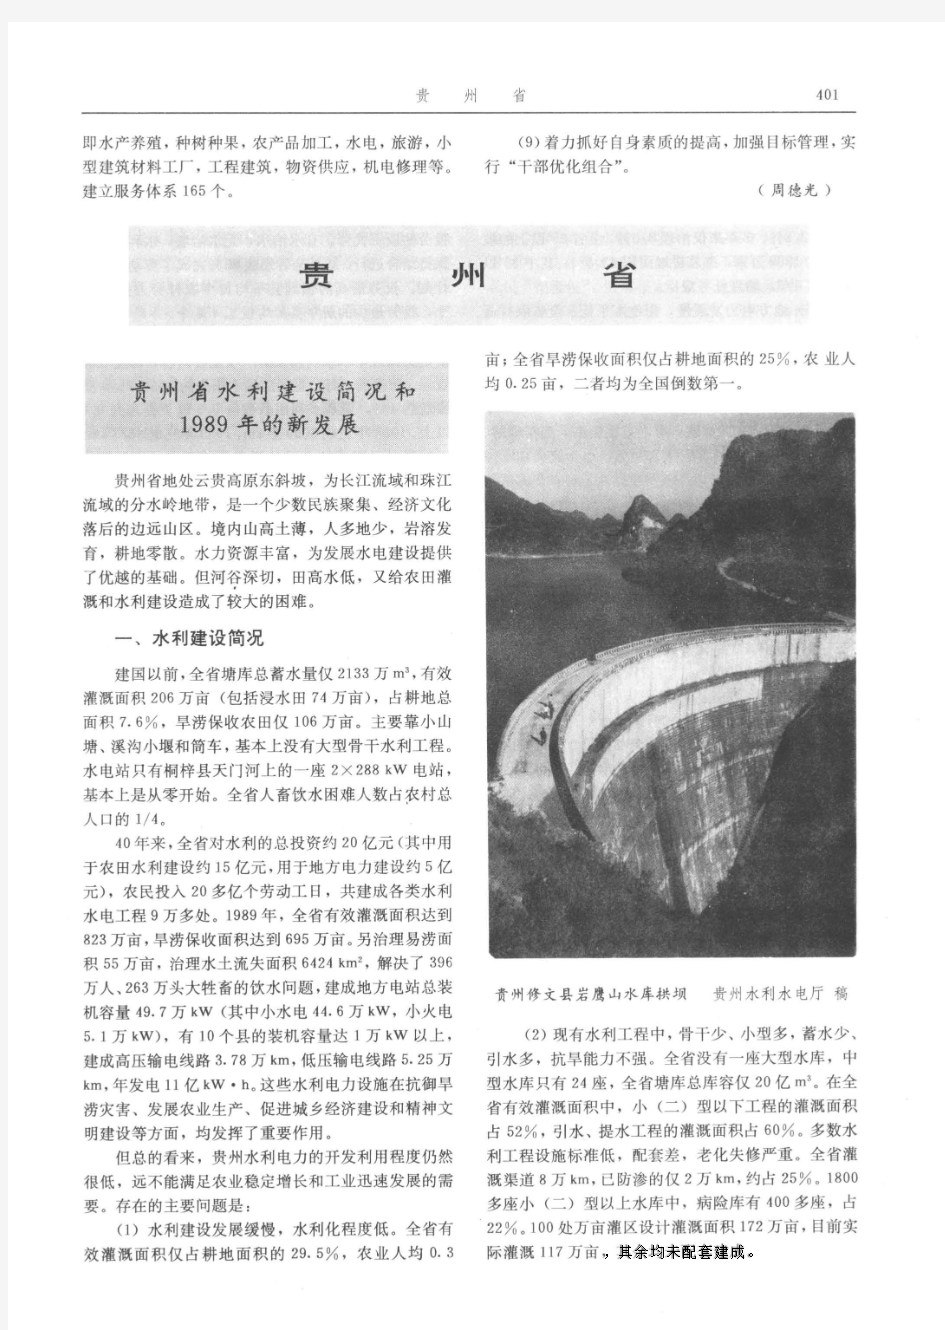 中国水利年鉴1990_地方水利-贵州省-贵州省水利建设简况和1989年的新发展